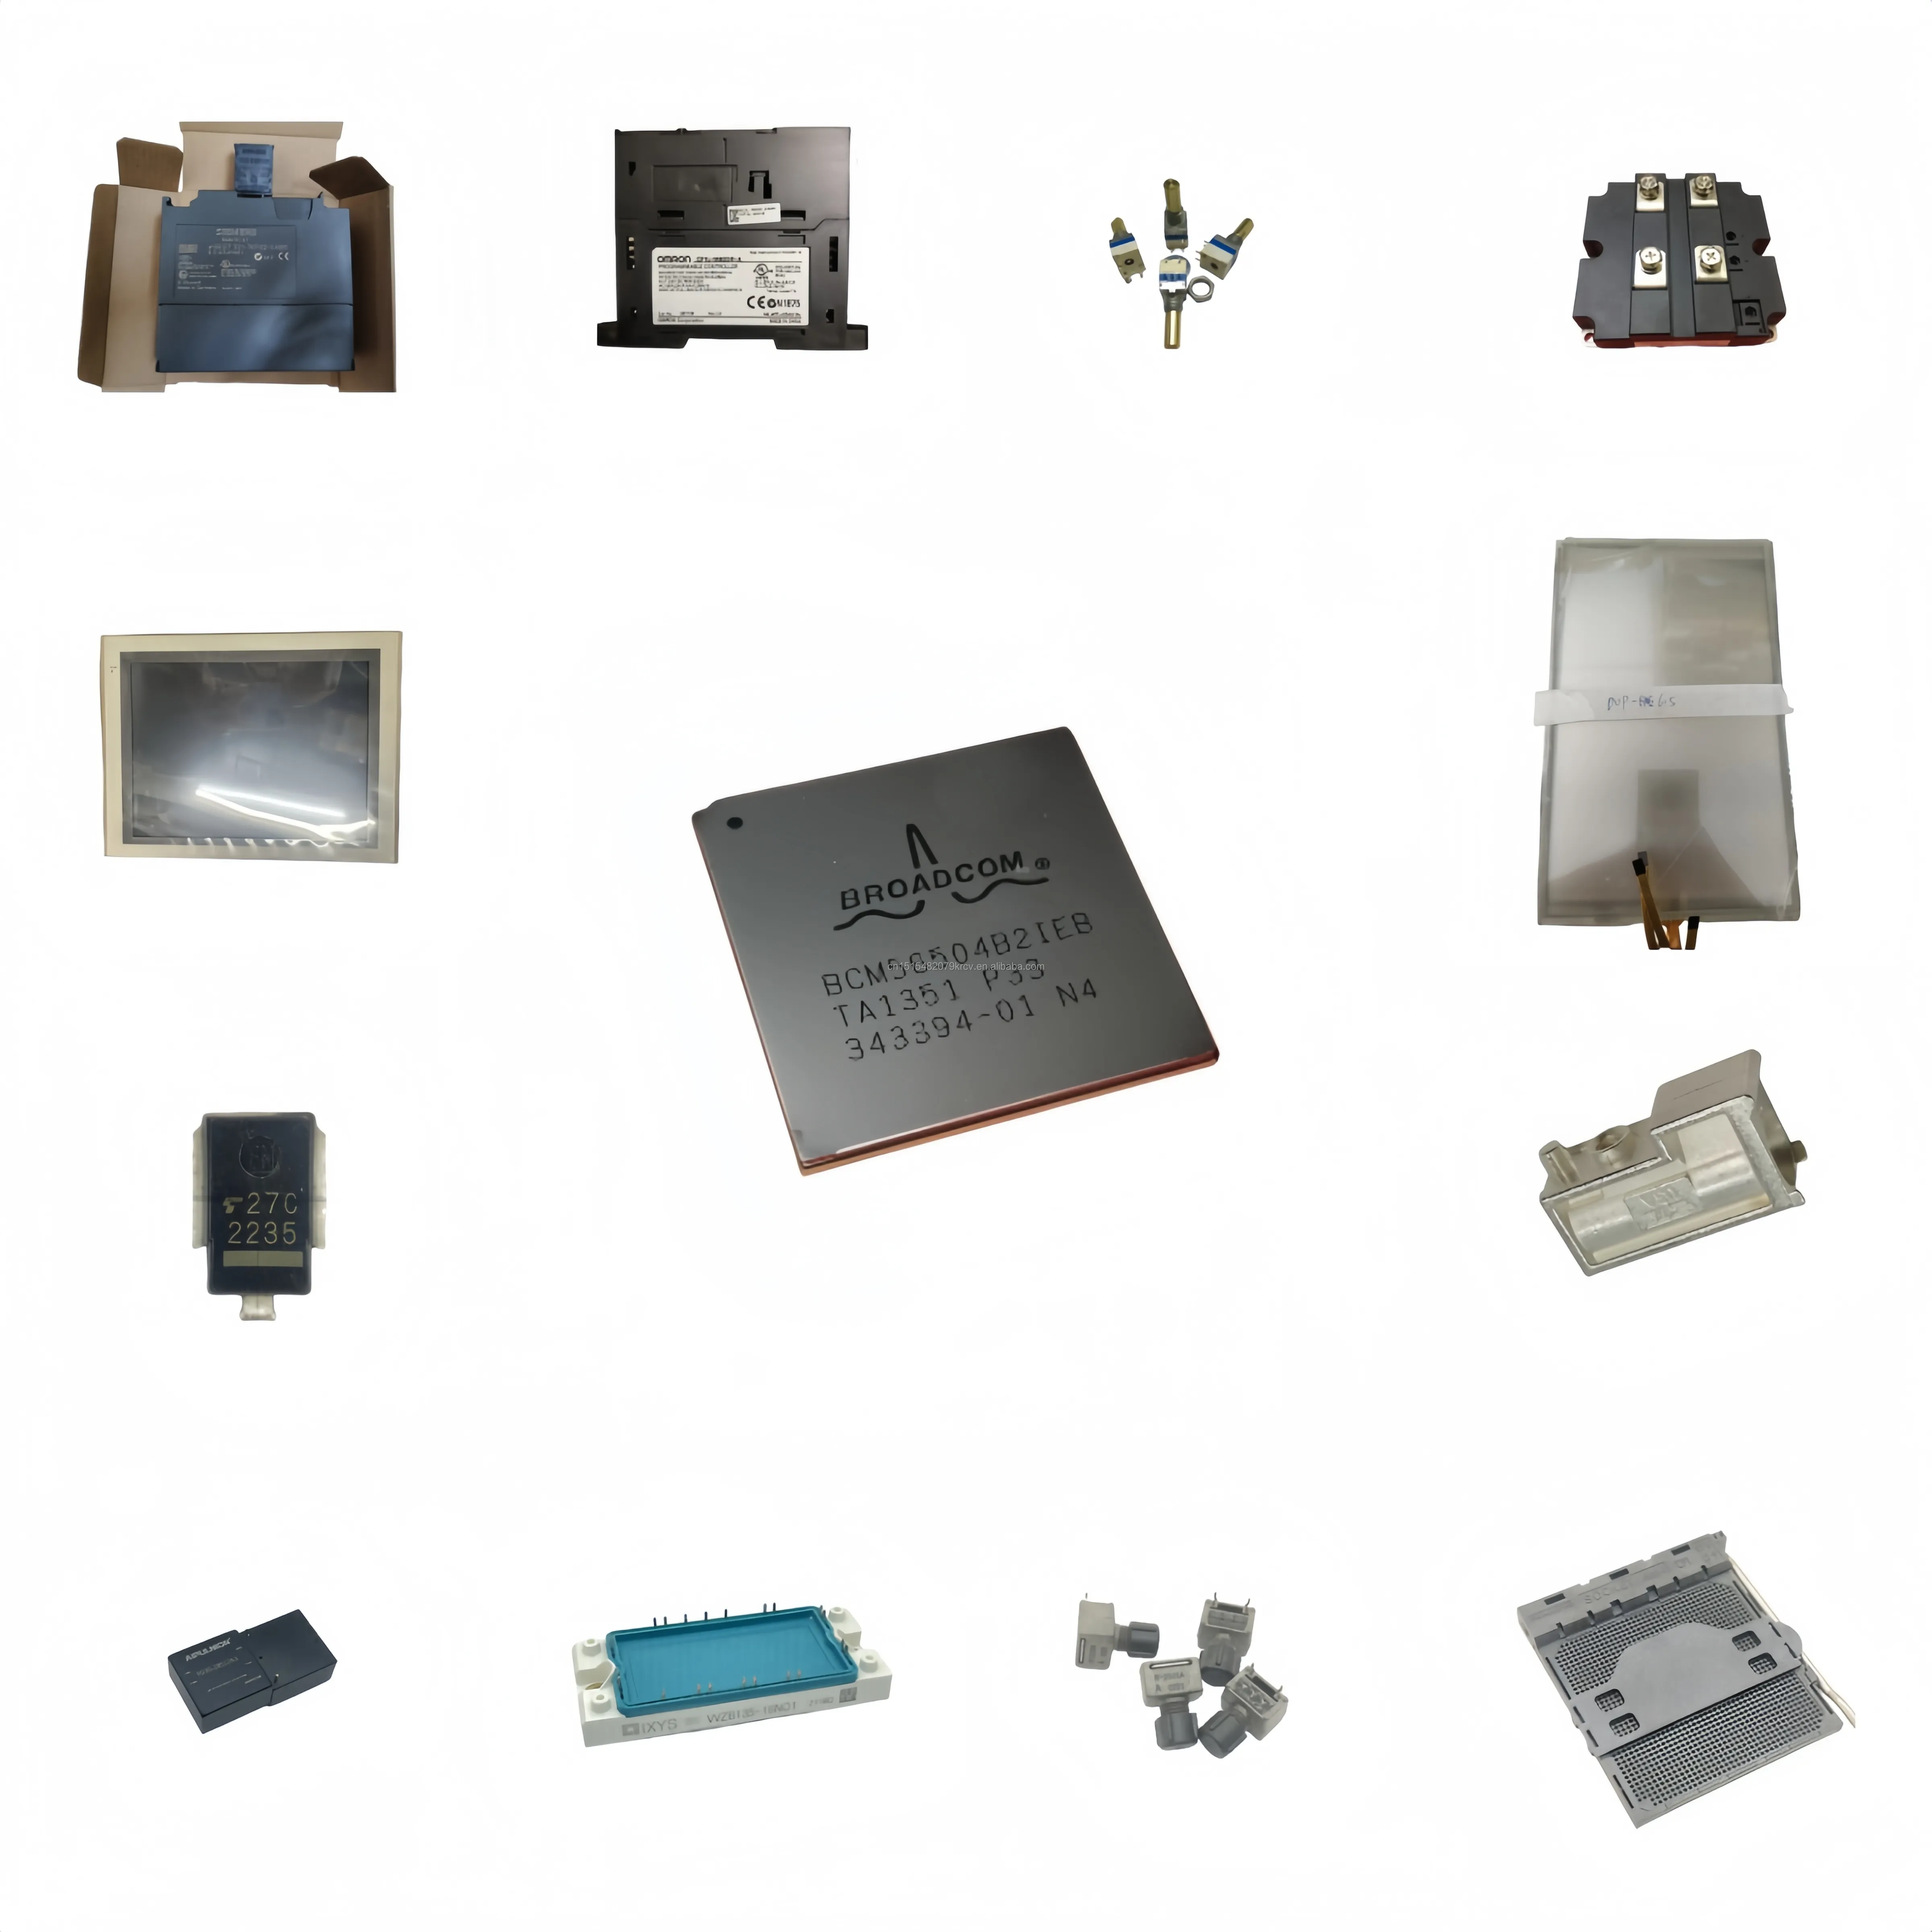 RPI-151 fotoelektrik anahtarı optik aralıklı sensör küçük hacimli mikro oluk optocoupler yuvası genişliği 1.5mm